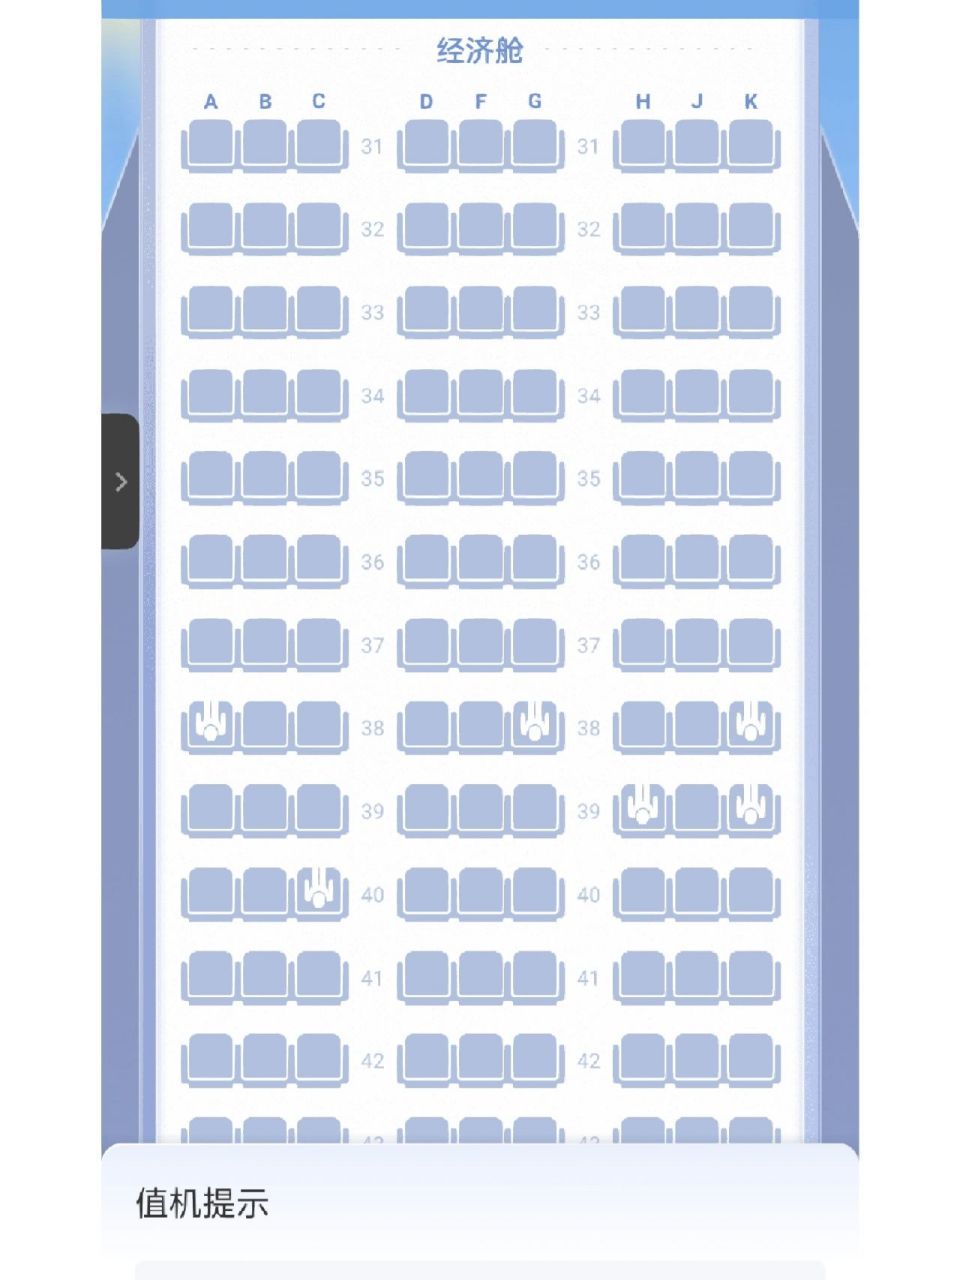 川航空客320座位图选座图片